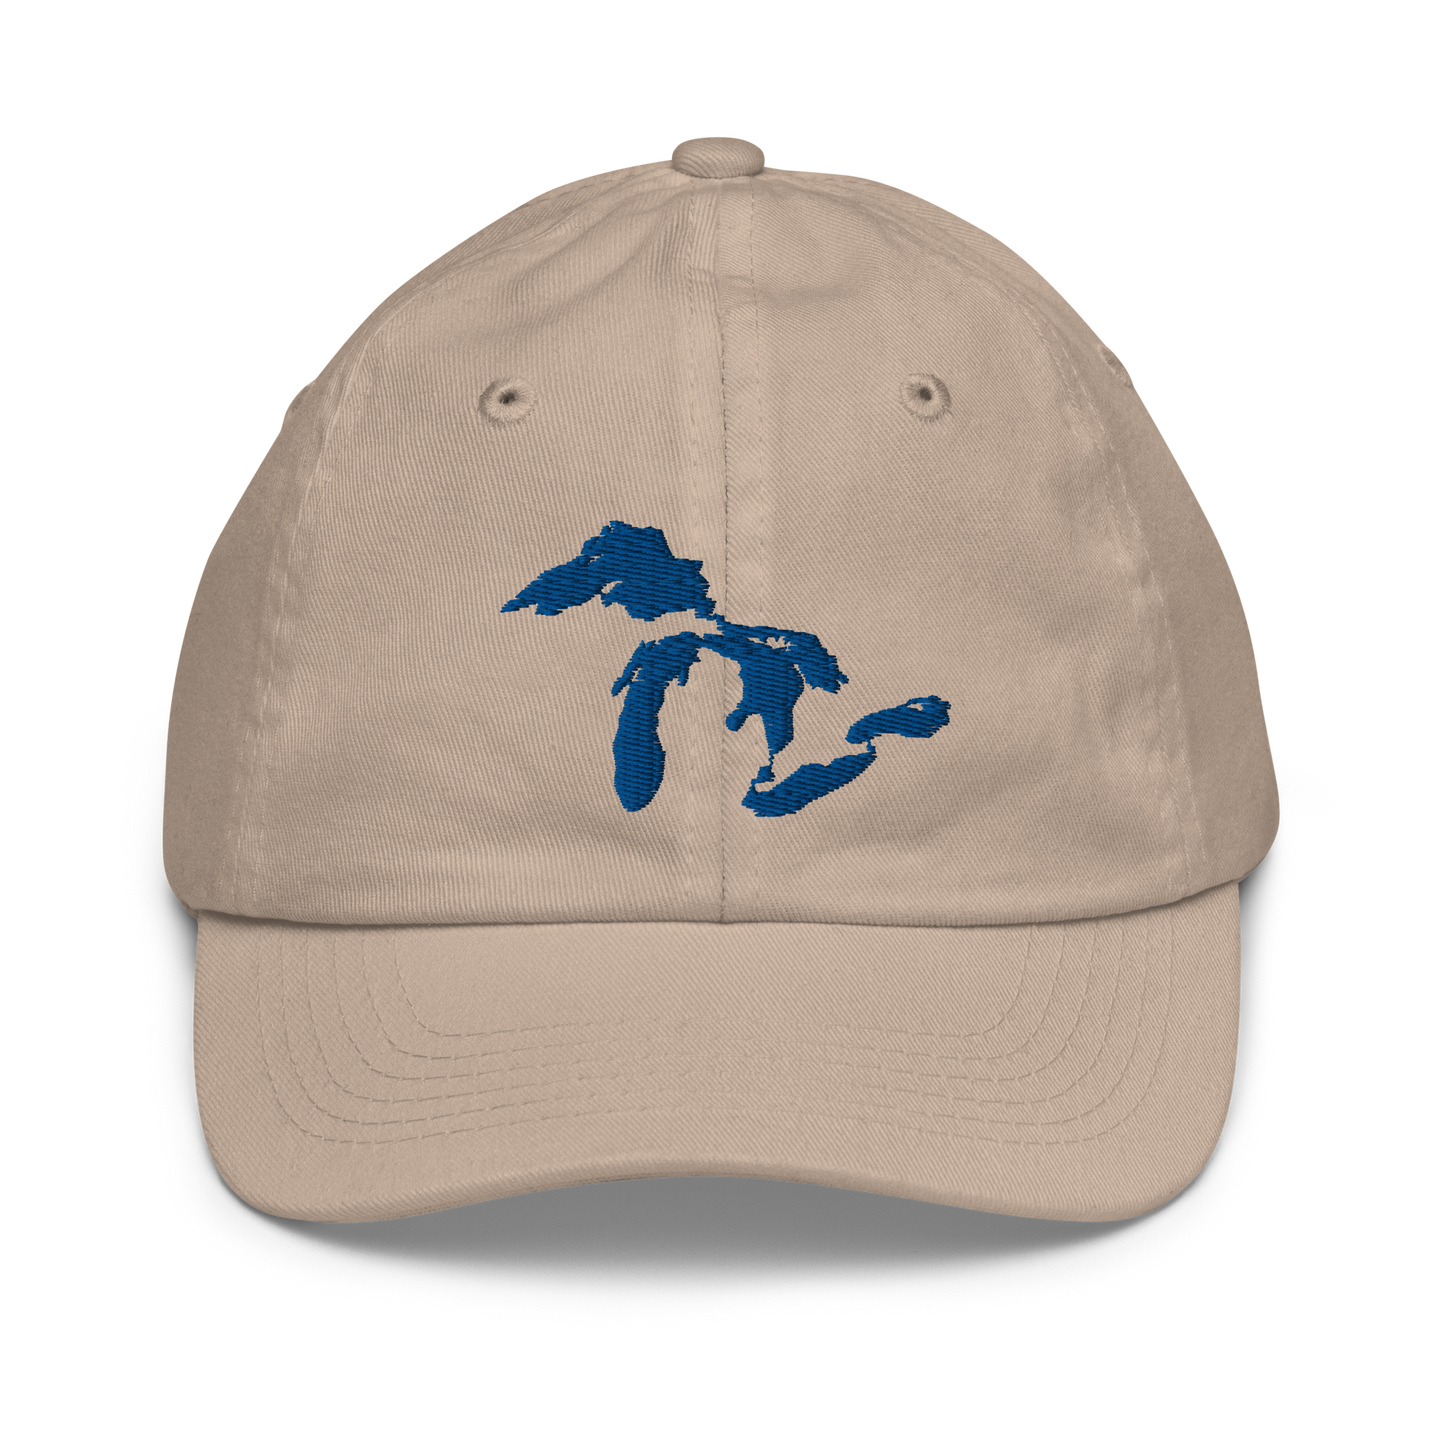 Great Lakes Youth Baseball Cap